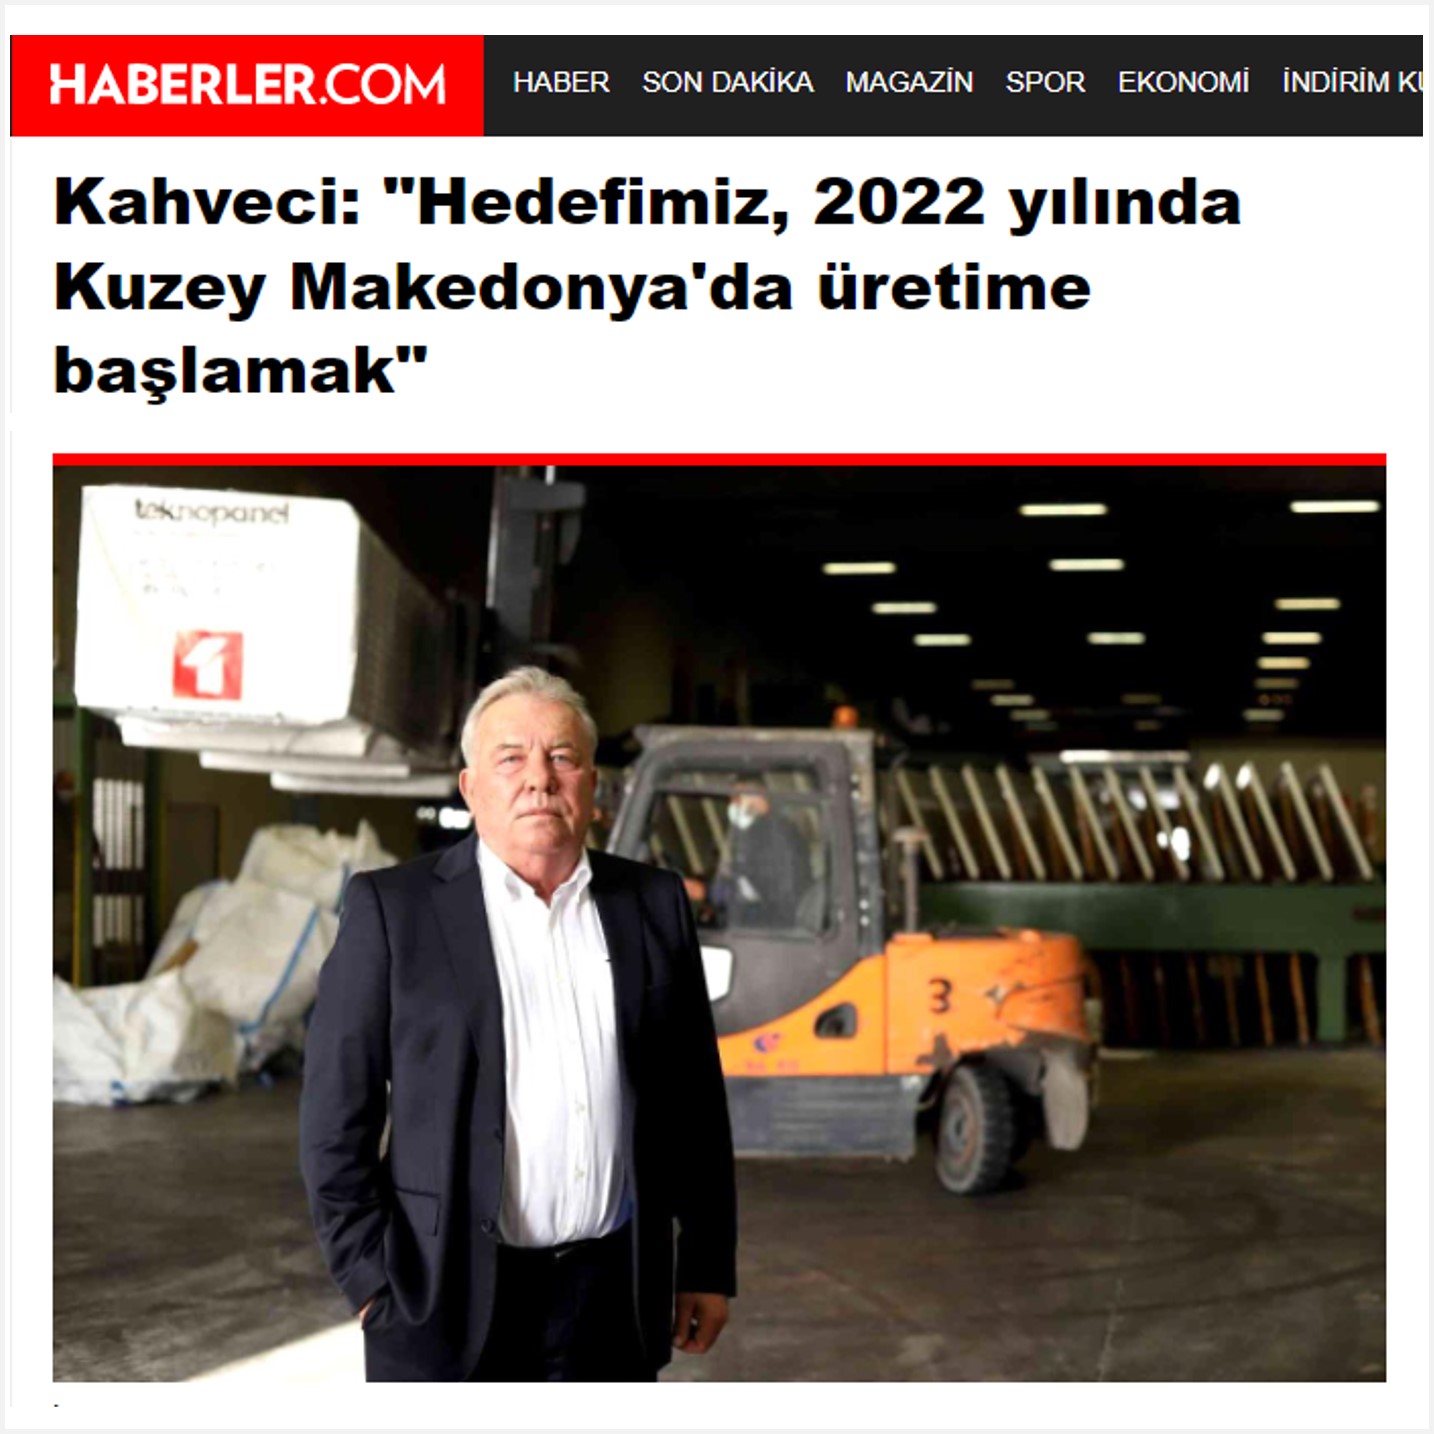 Haberler.com: "Orhan Kahveci: Hedefimiz 2022 Yılında Kuzey Makedonya’da Üretime Başlamak"